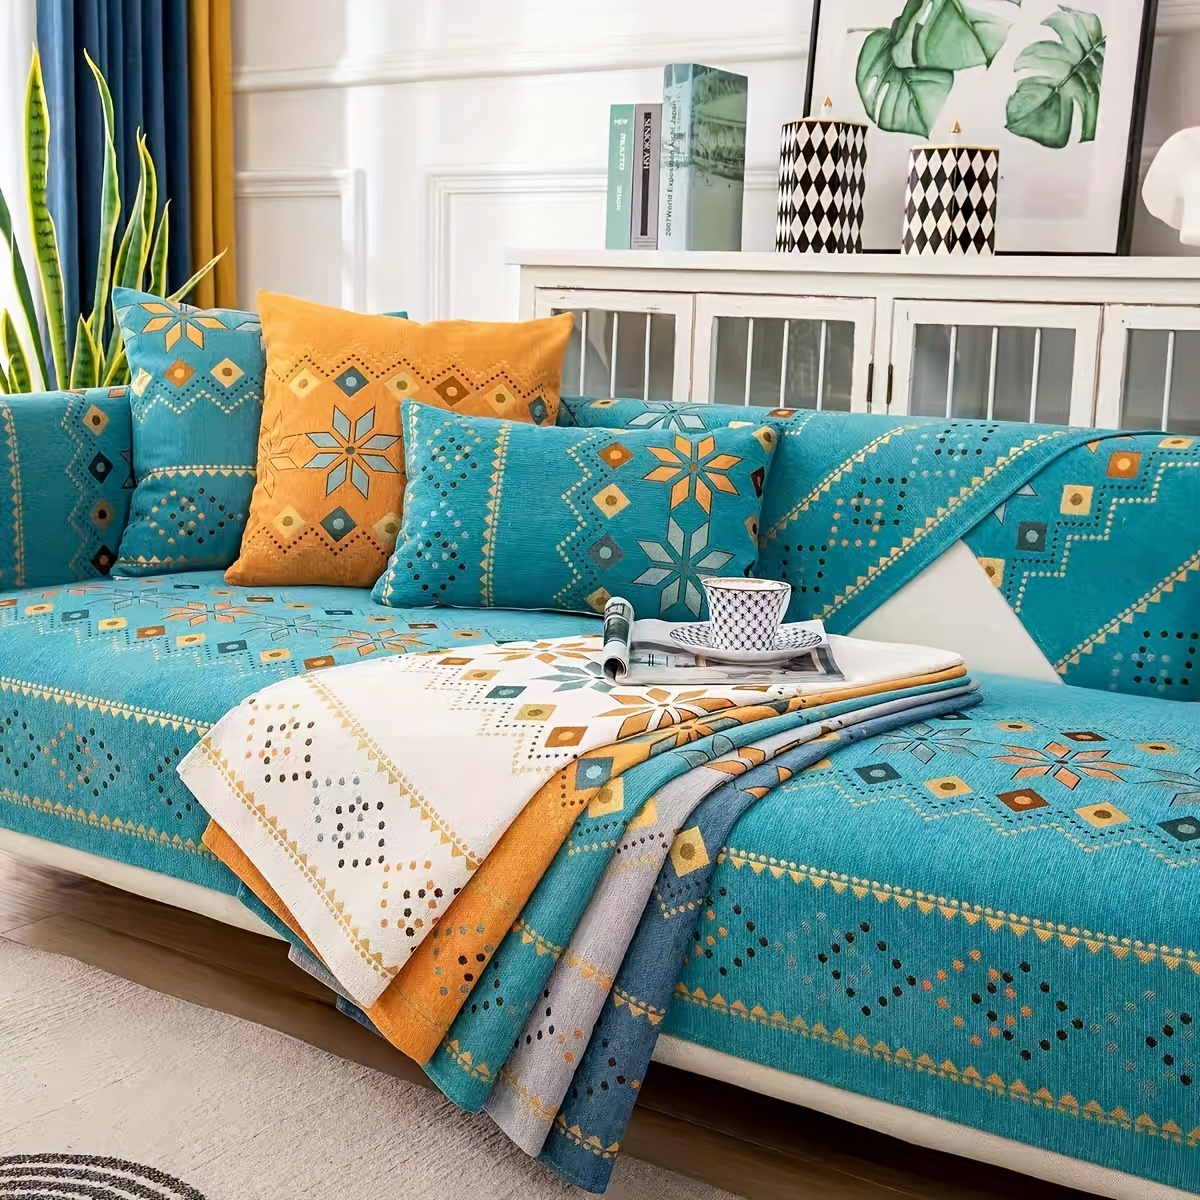  KUYUC Mantas para sofá con volantes, funda de sofá de felpilla  multifunción, elegante funda de sofá para sofá, cama, sofá y sala de estar  (color azul, tamaño: 70.9 x 90.6 in) 